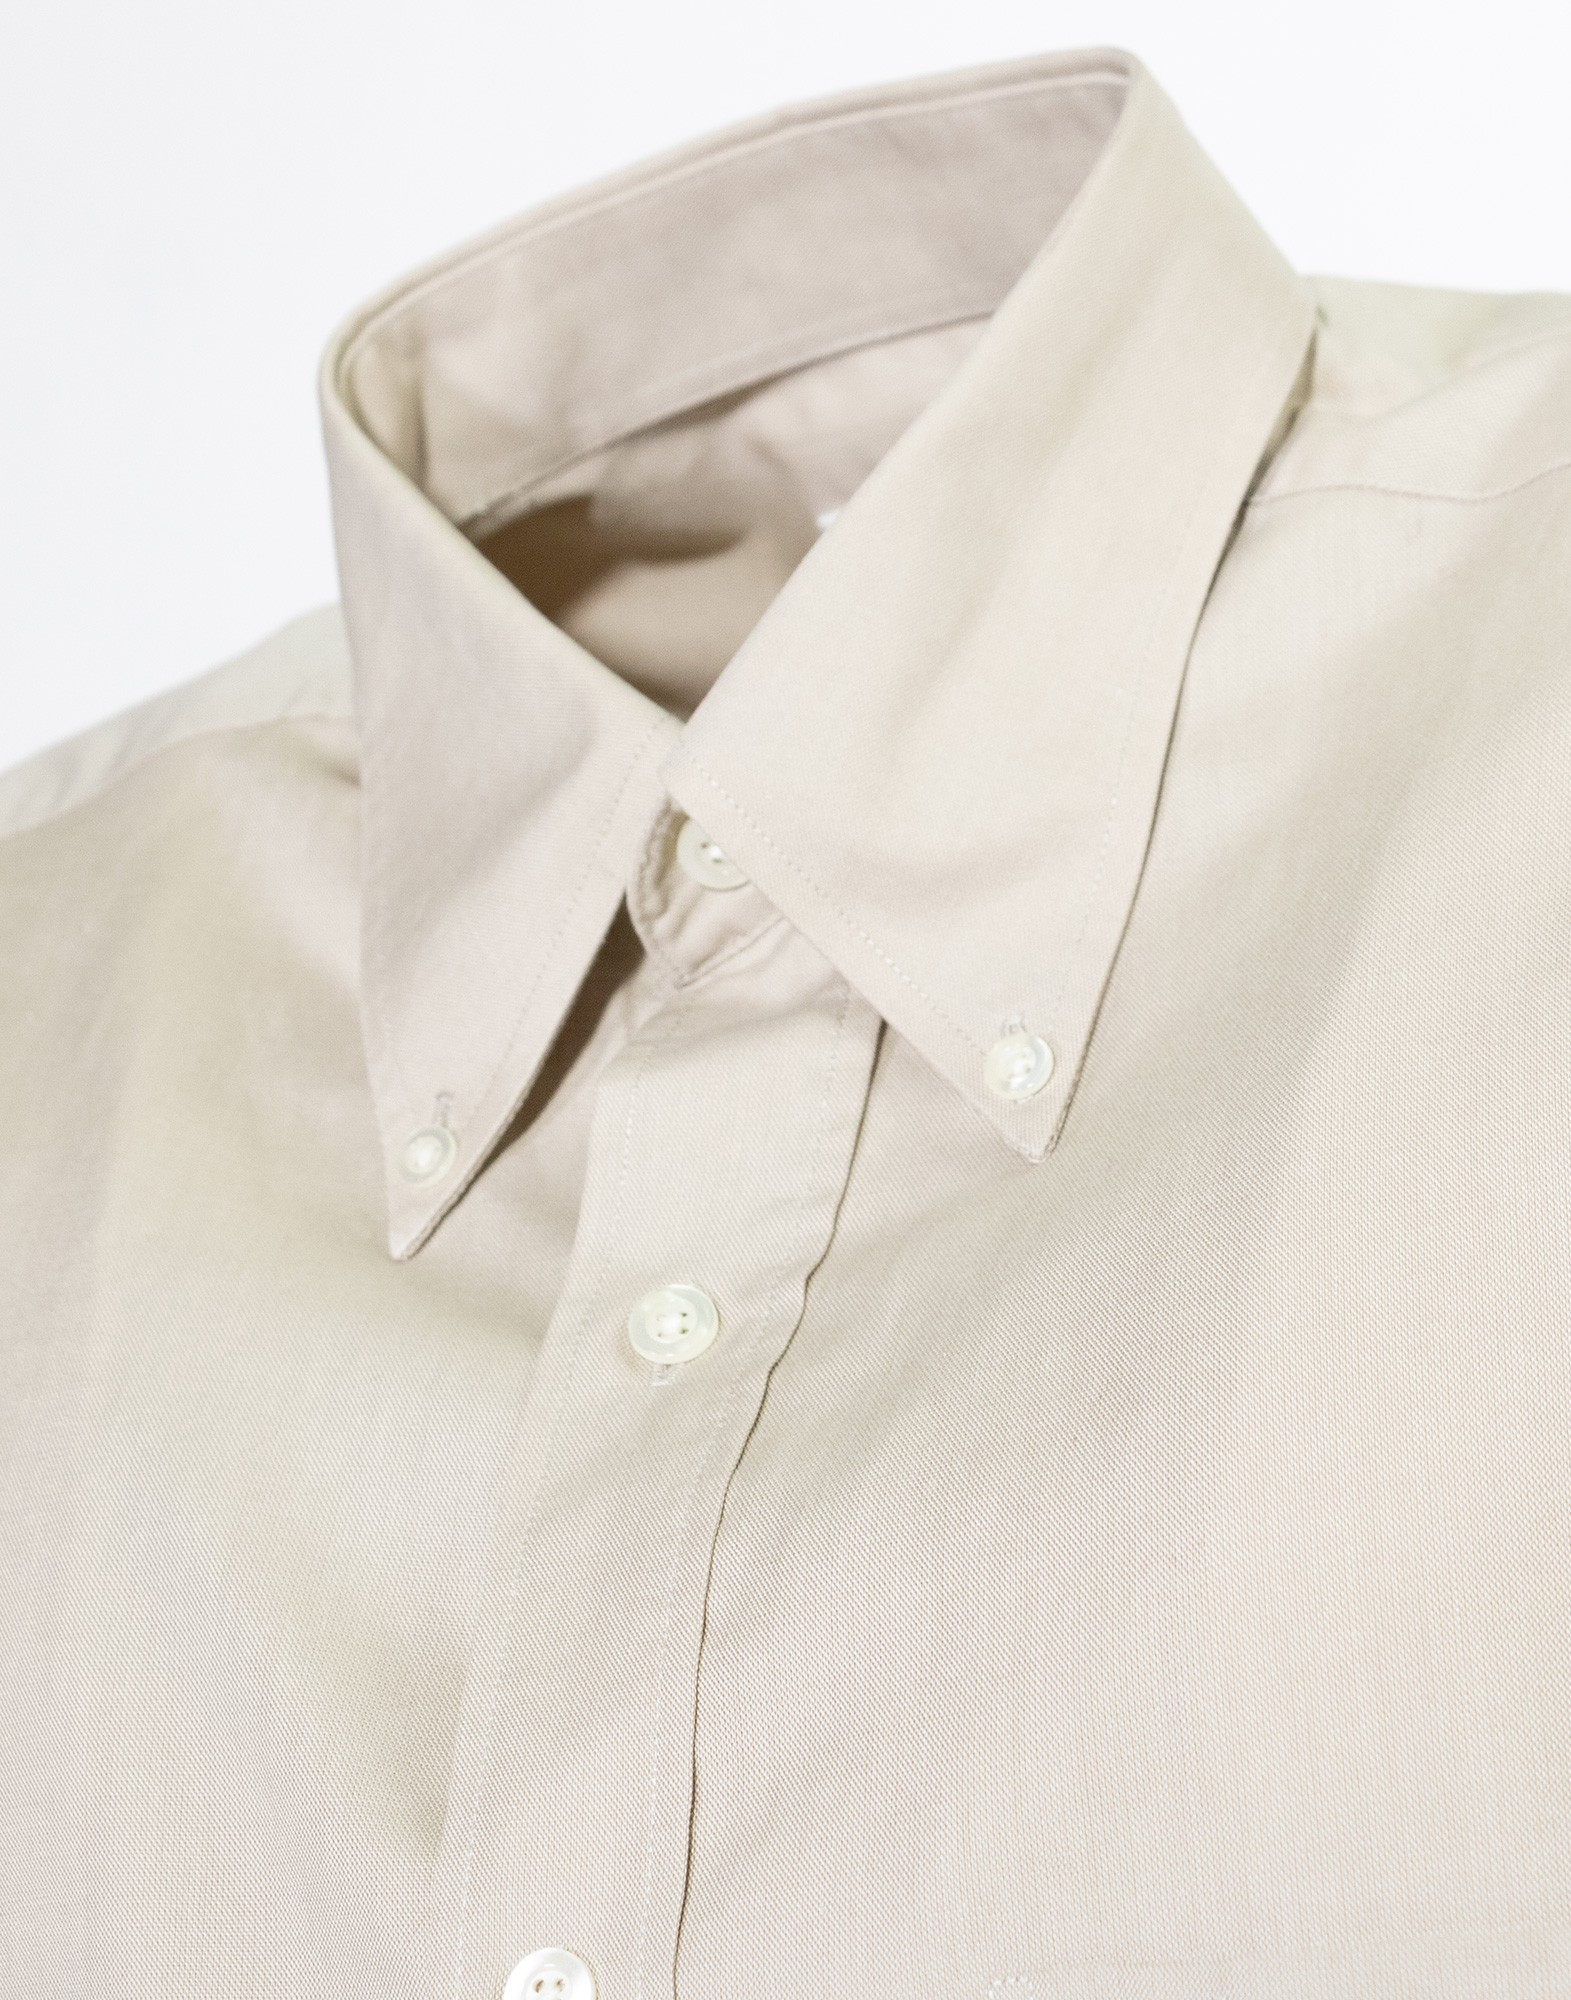 Yves Saint Laurent - 100% Cotton plain shirt